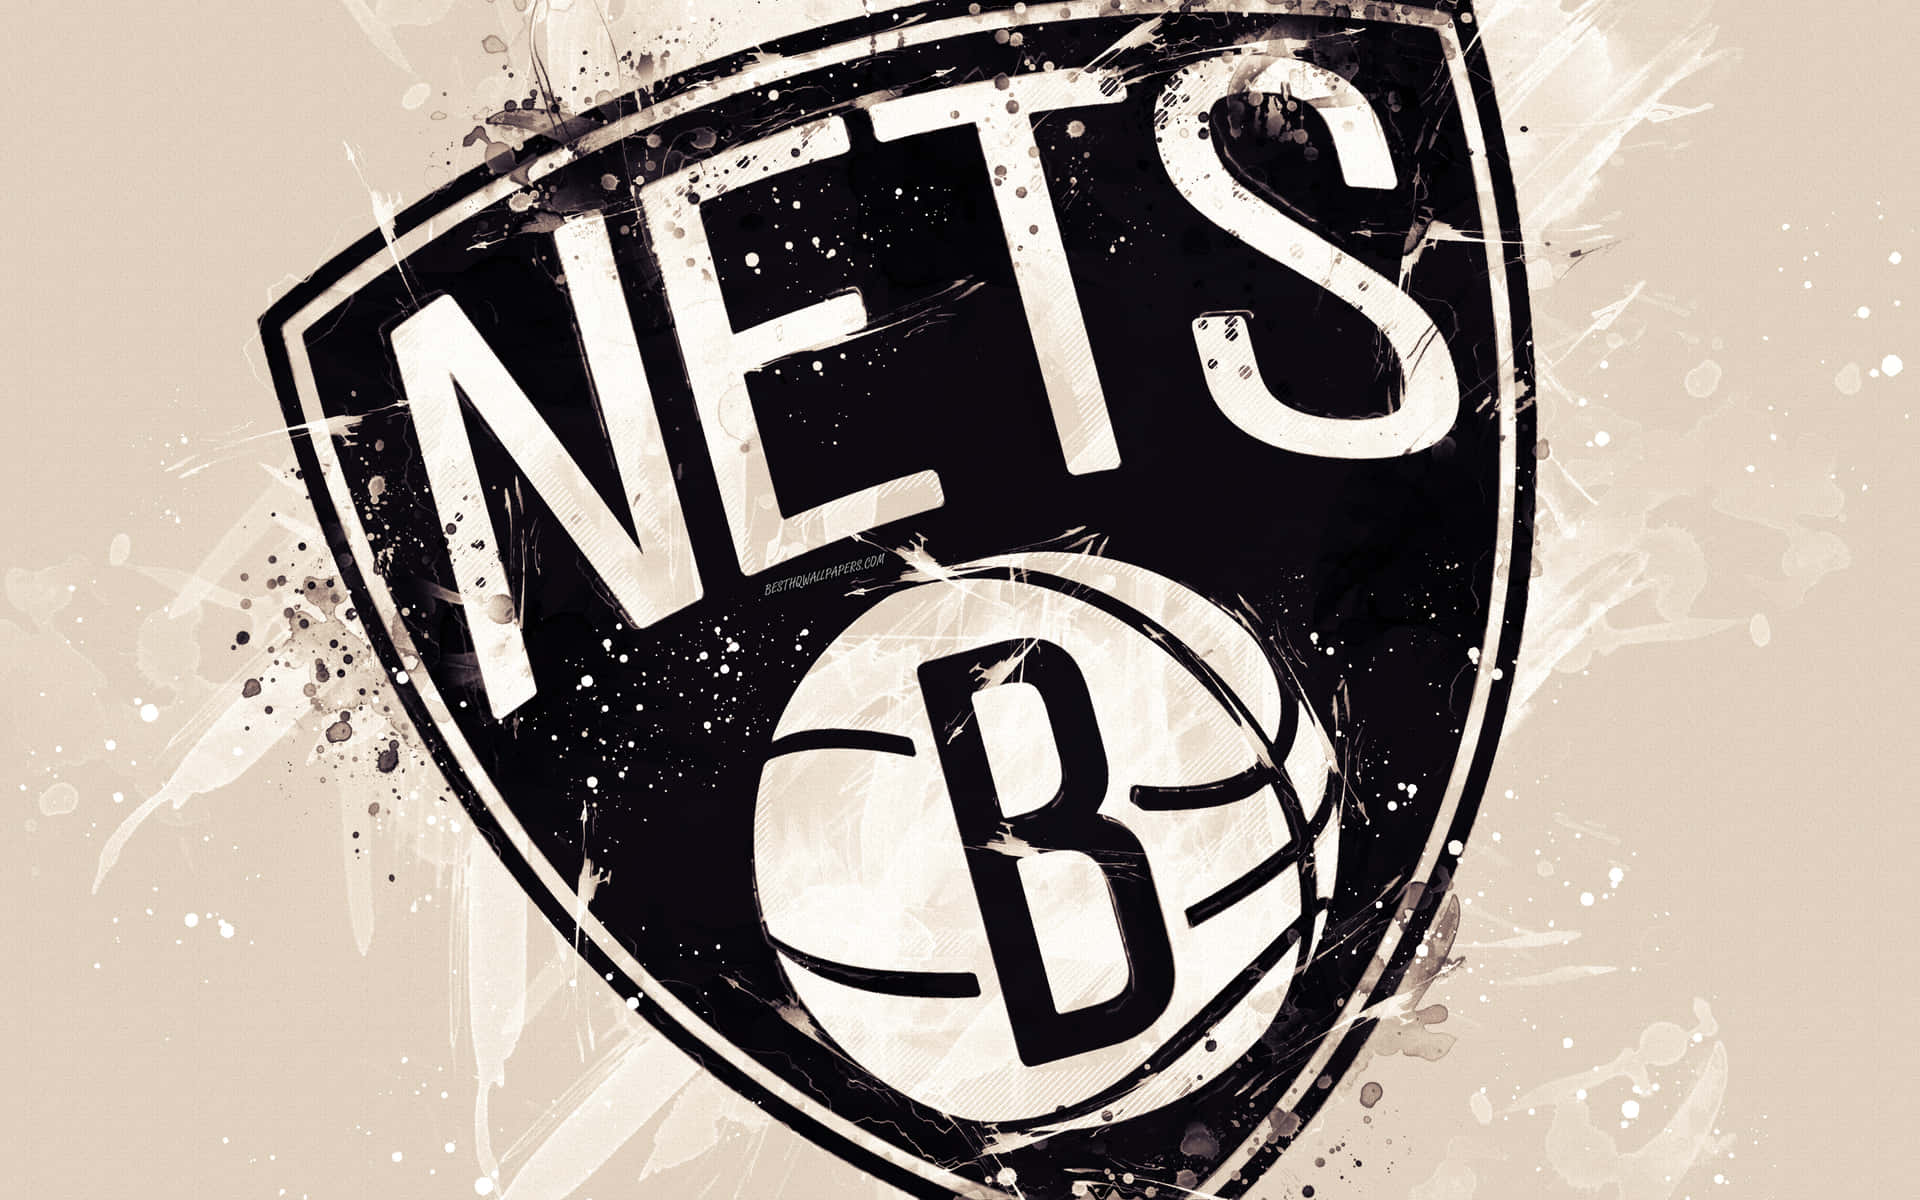 Mostrail Tuo Sostegno Alla Squadra Con Stile Con L'abbigliamento Dei Brooklyn Nets.